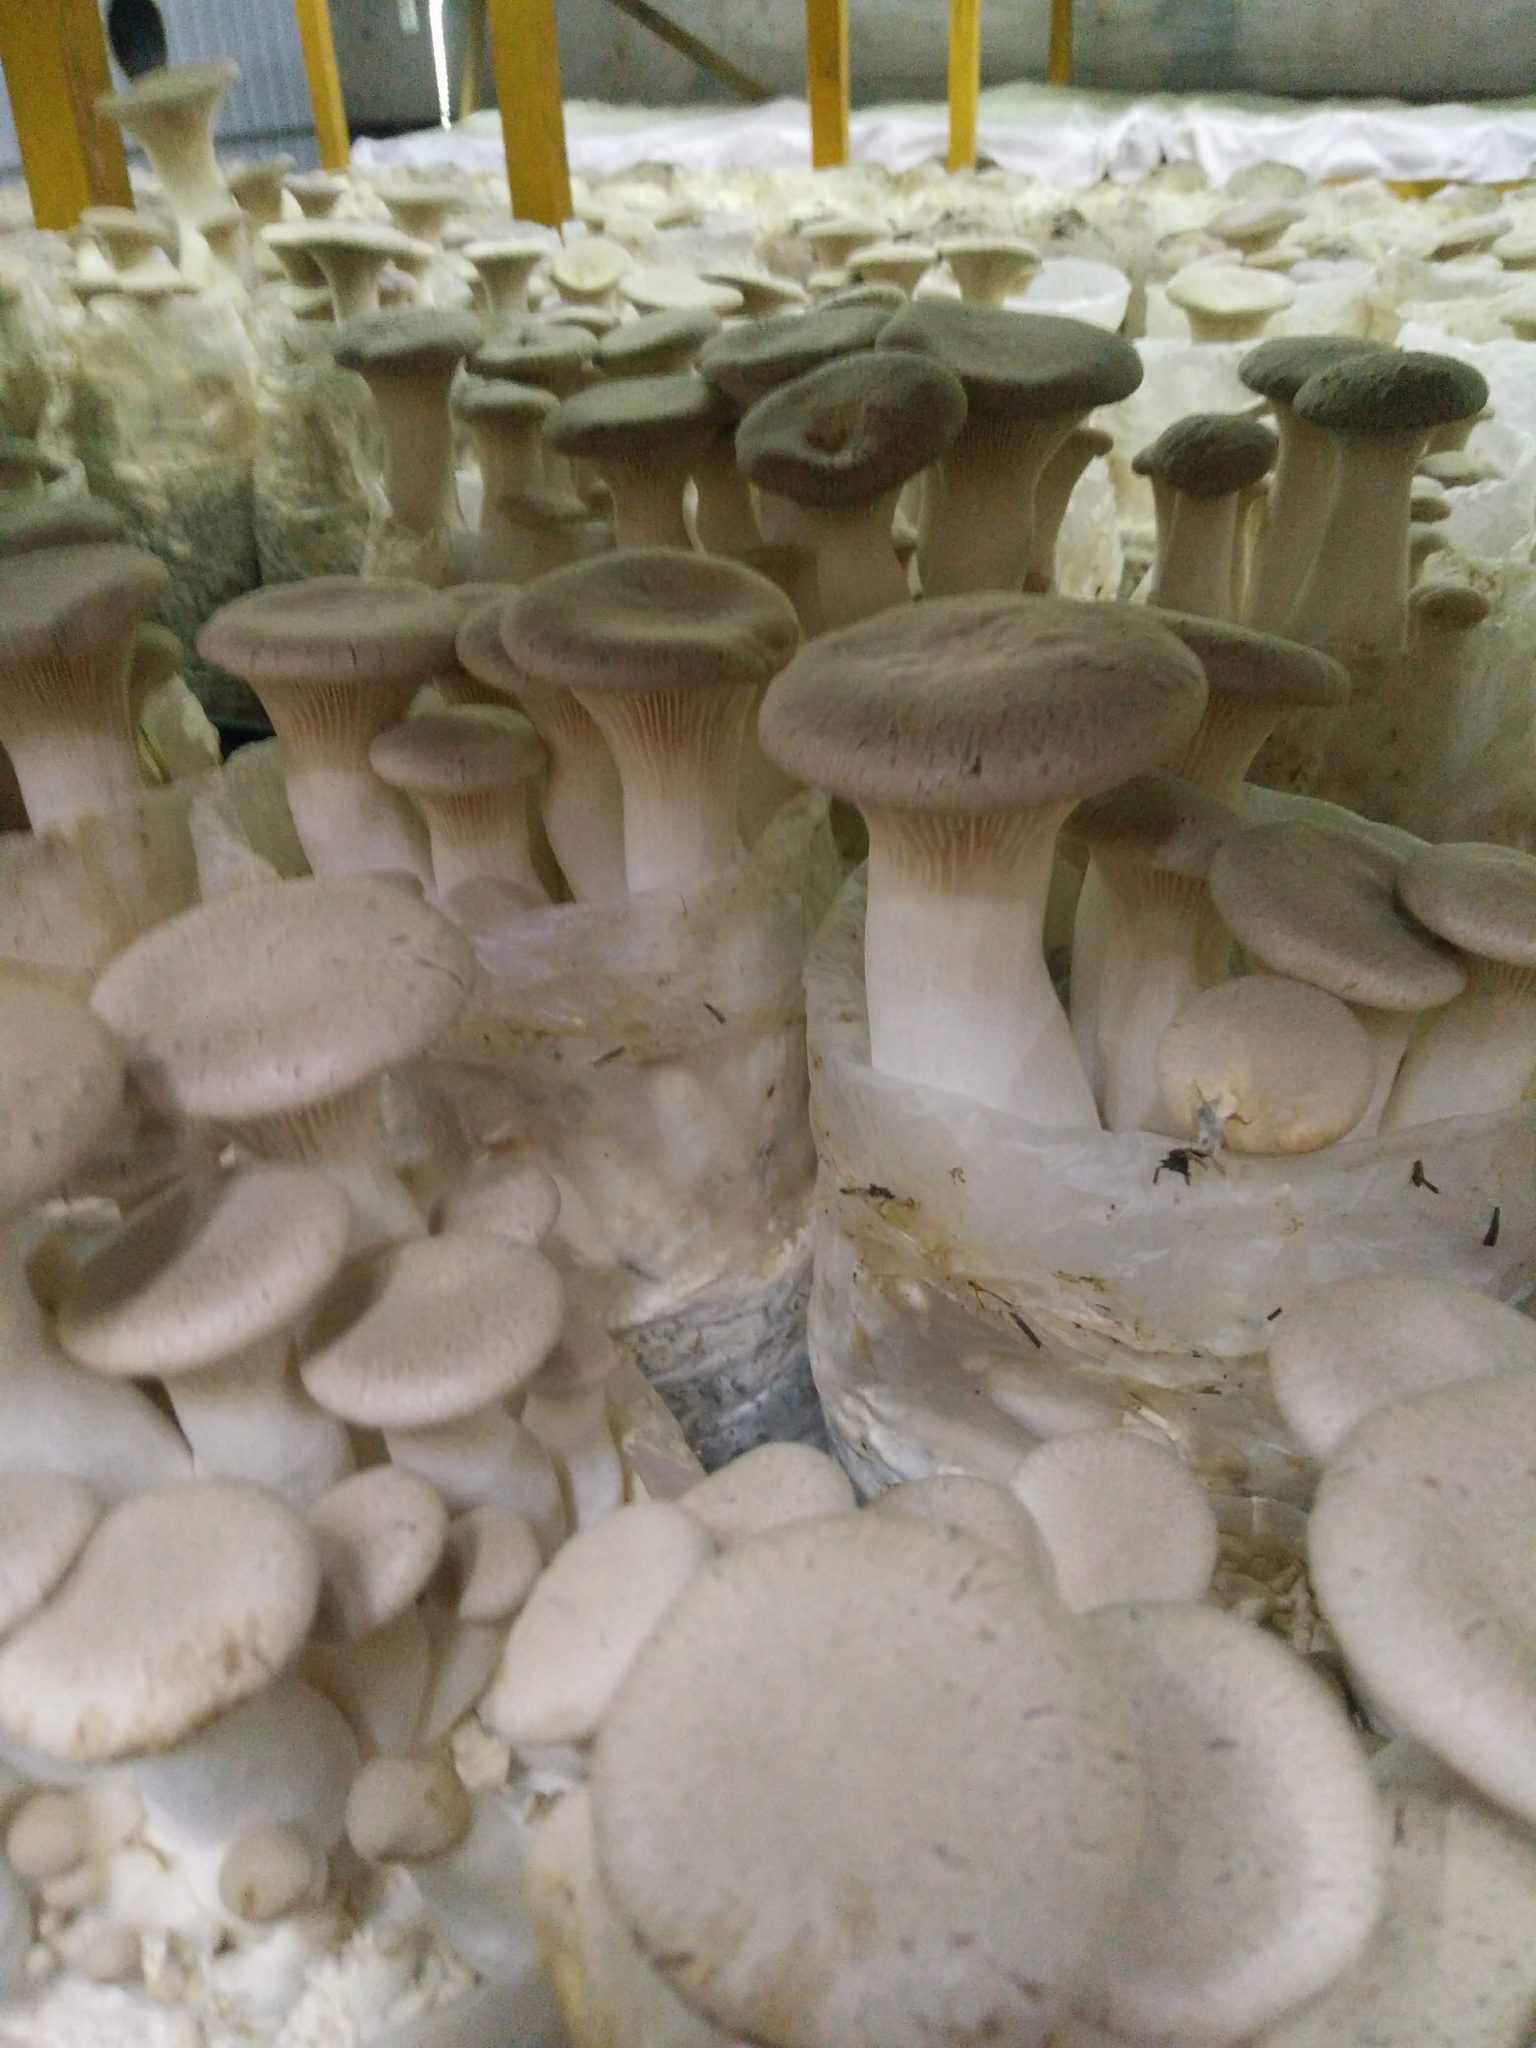 грибы эринги рецепт отзывы с фото